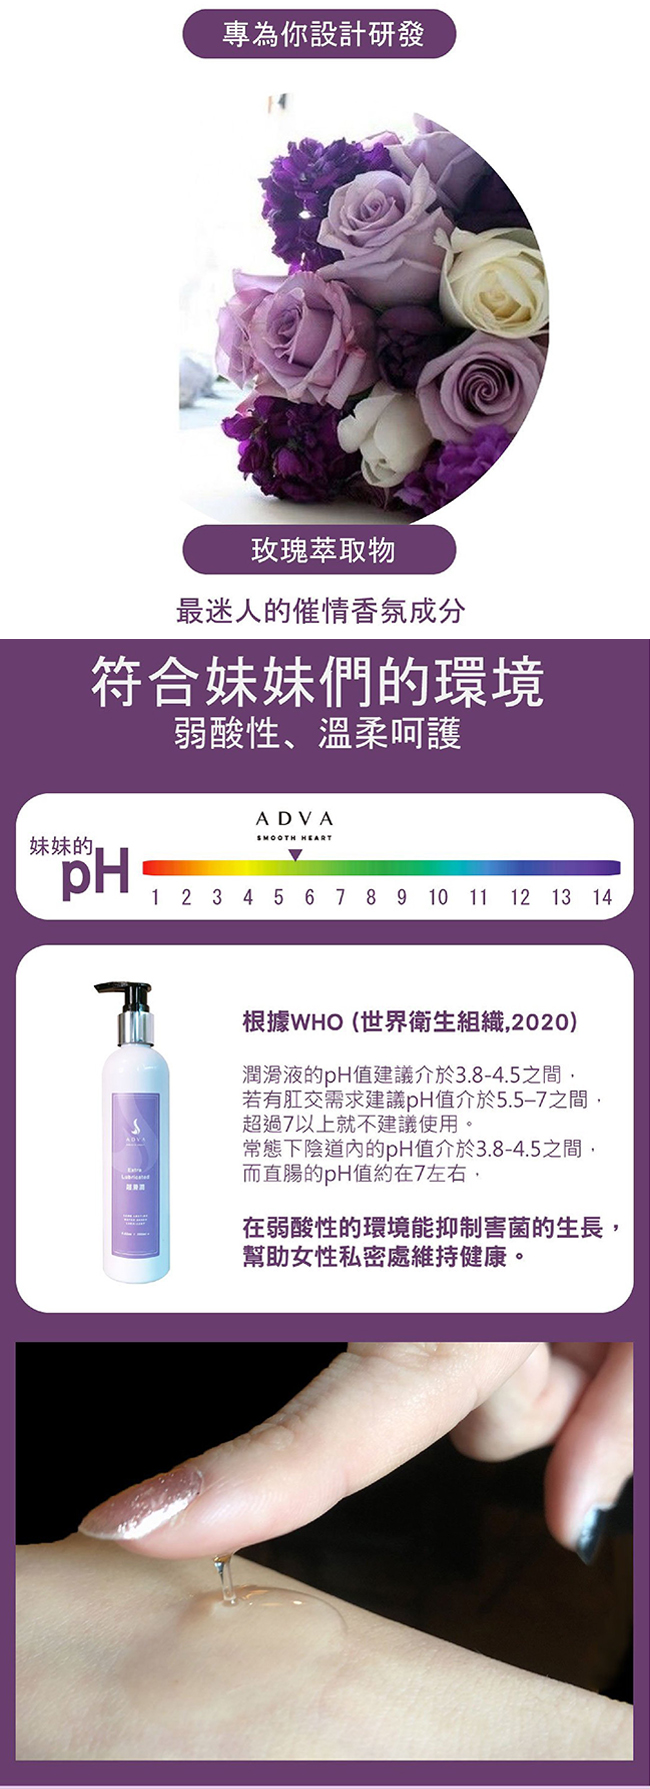 台灣製造 ADVA．Extra Lubricated 濃厚超滑潤潤滑液 250ml